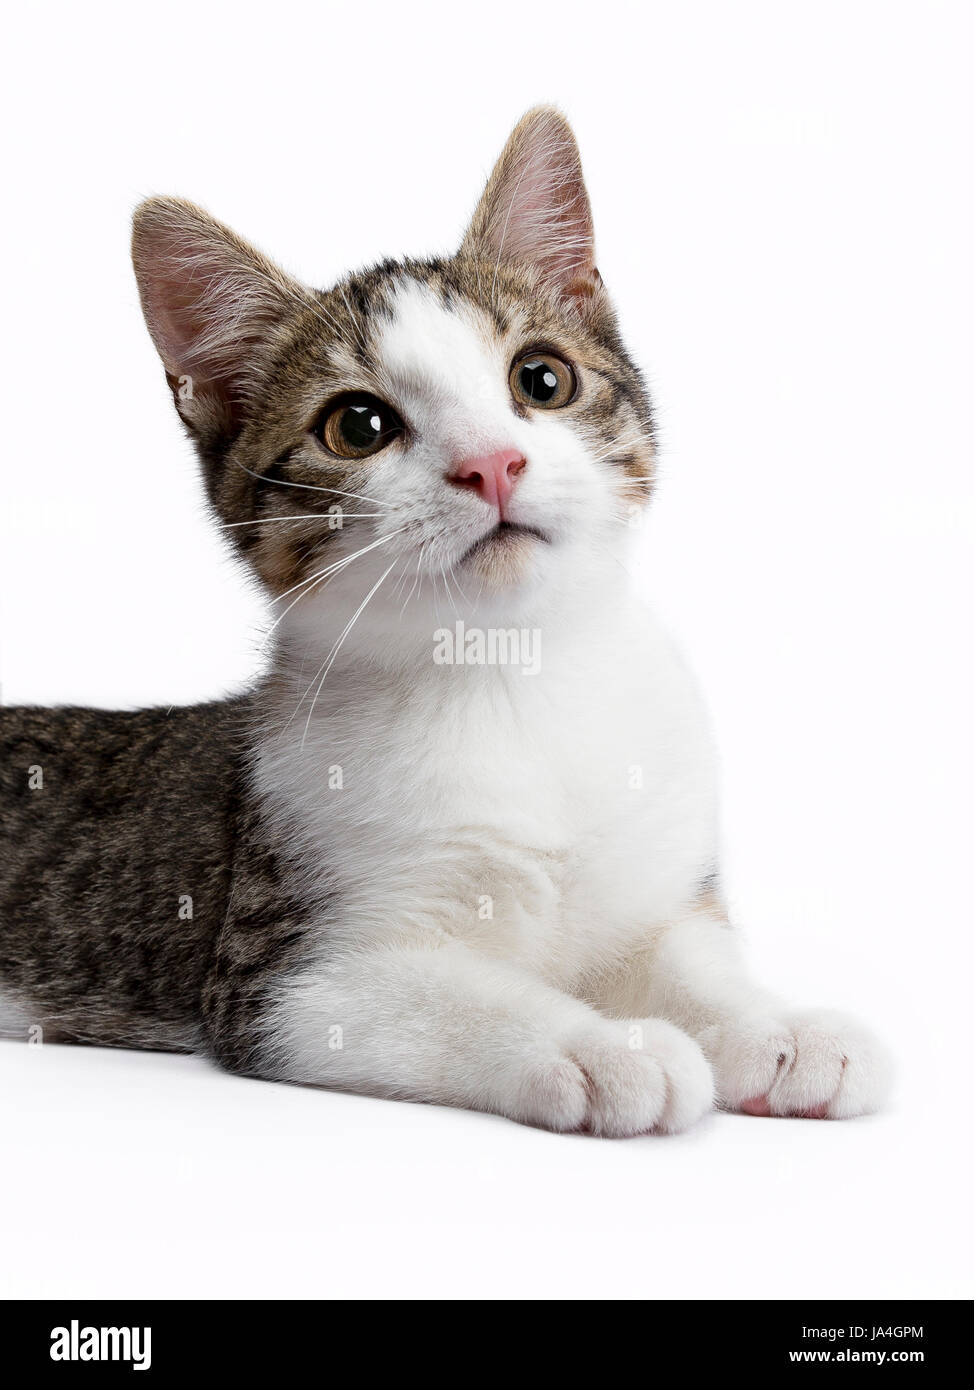 Ritratto di European Shorthair kitten isolato su sfondo whiet lloking fino Foto Stock